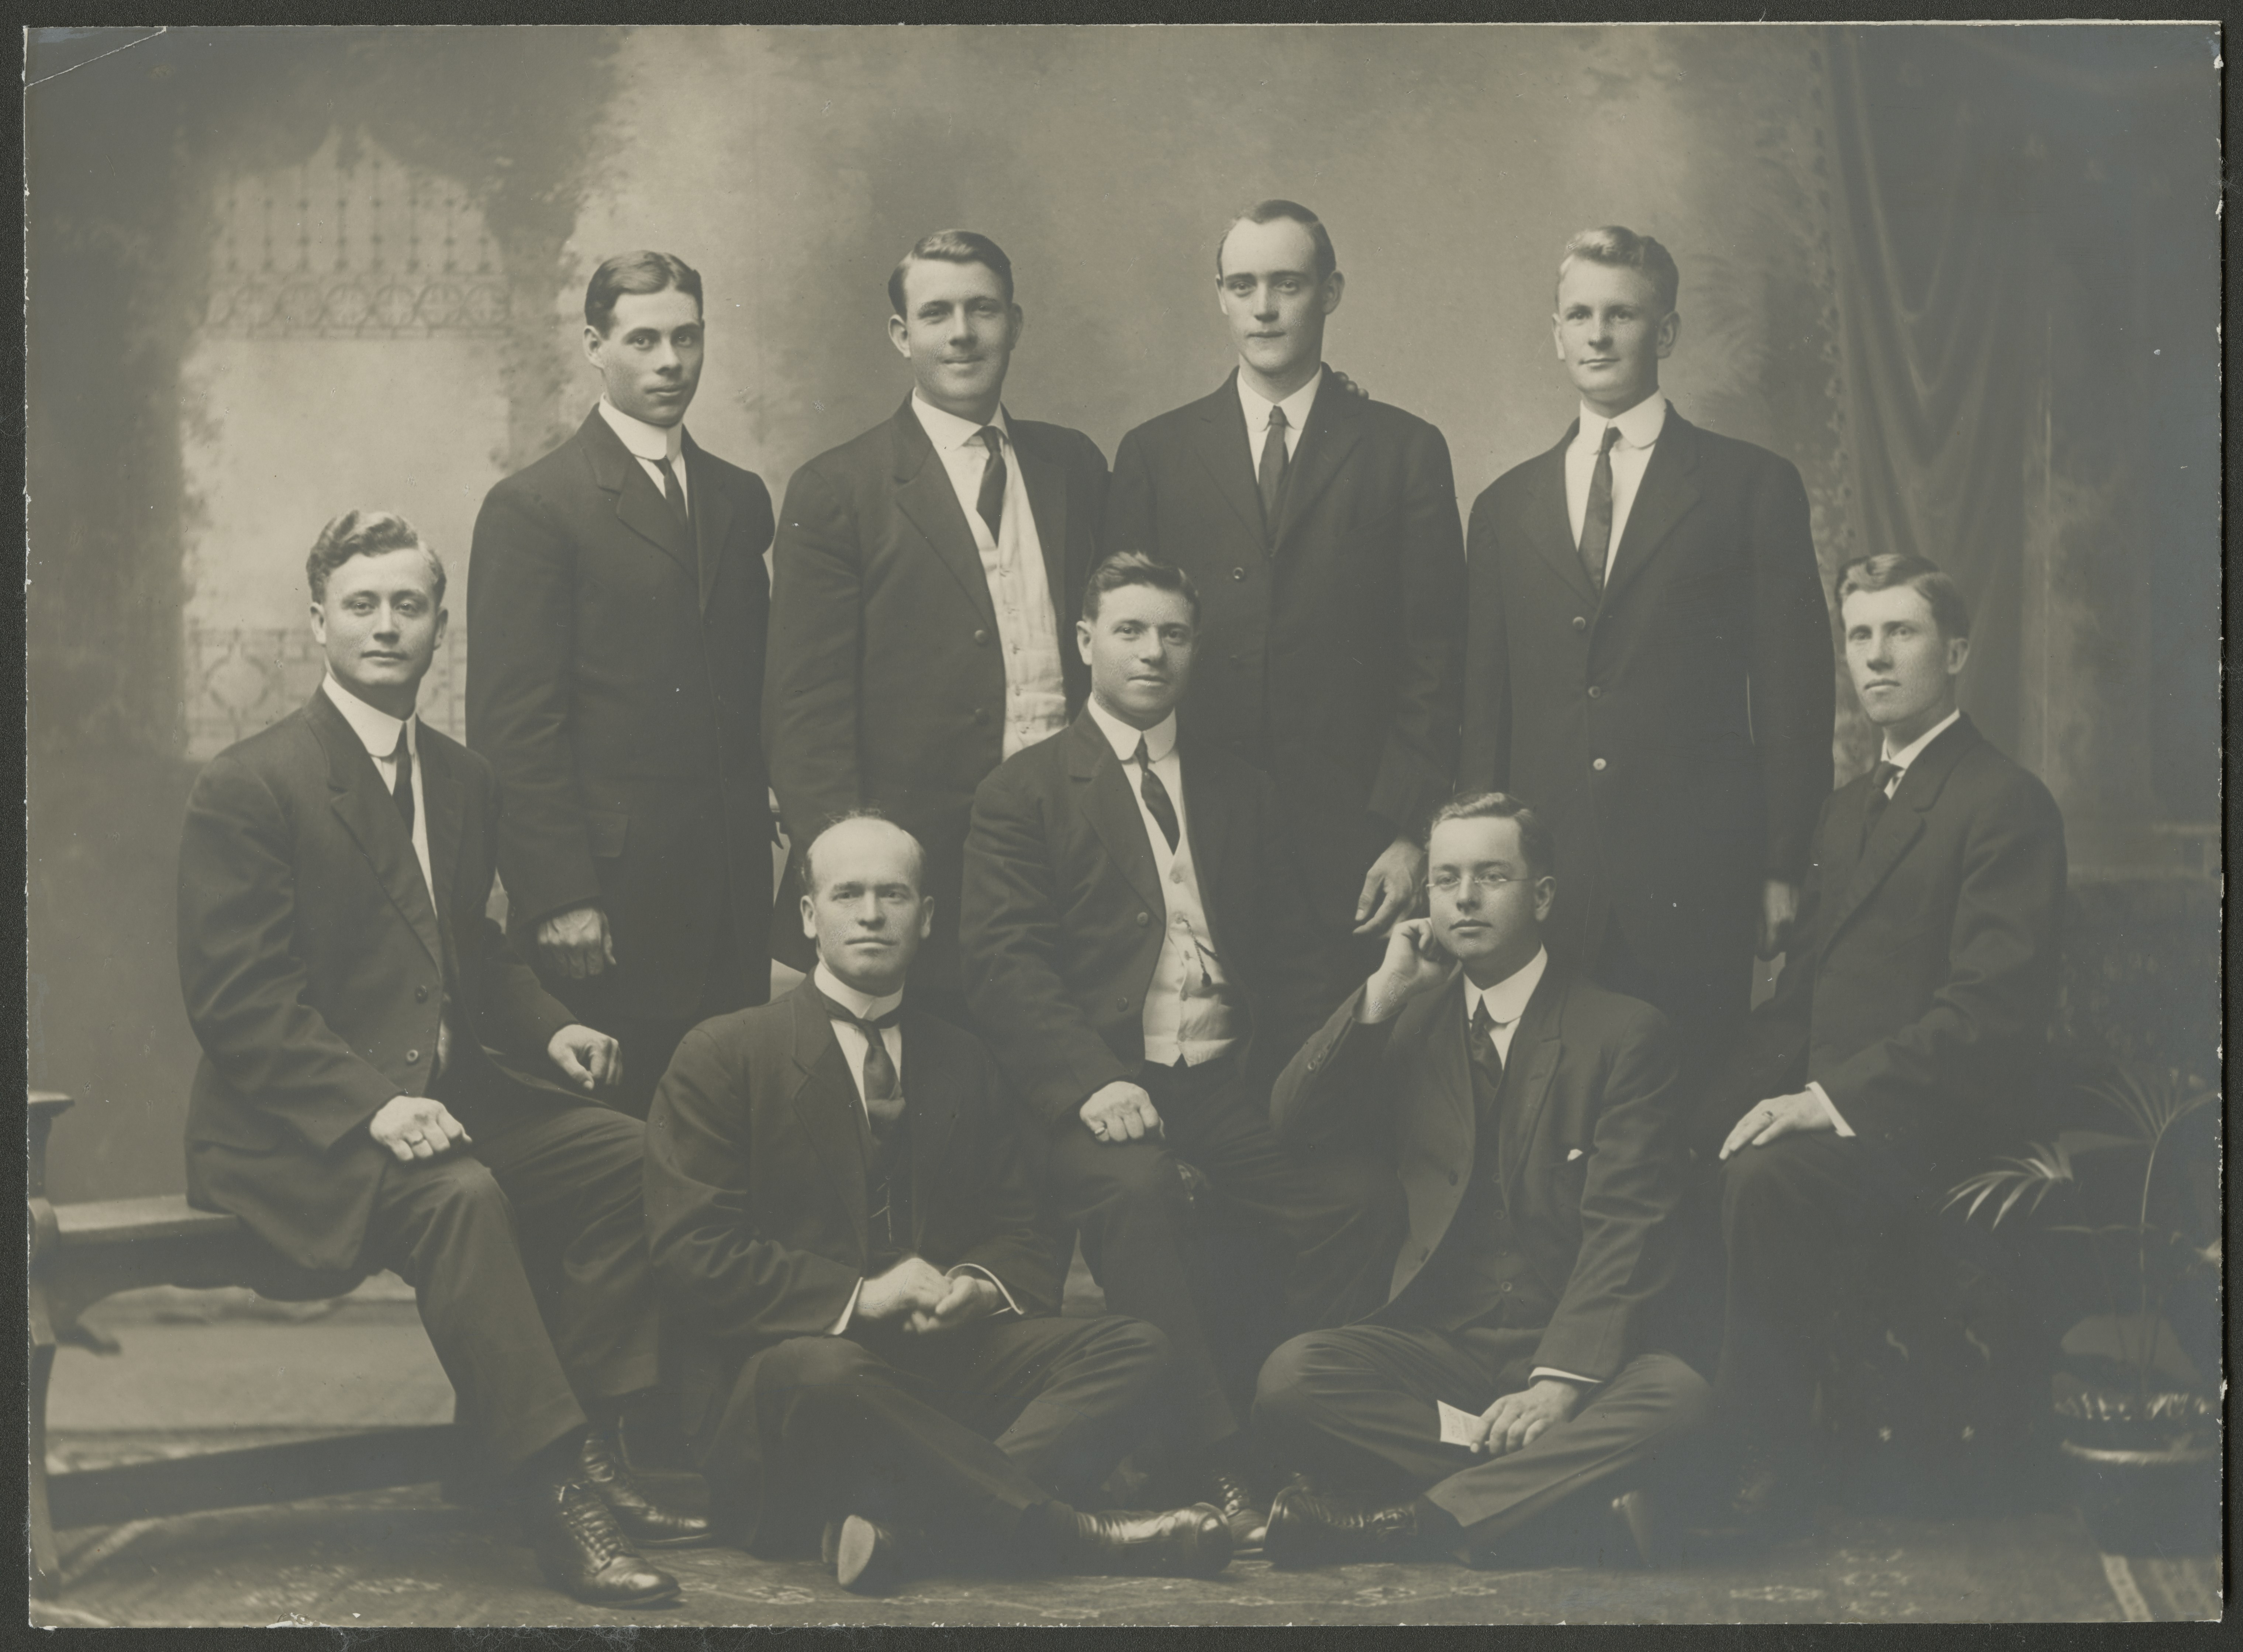 Queensland Conference, circa 1913